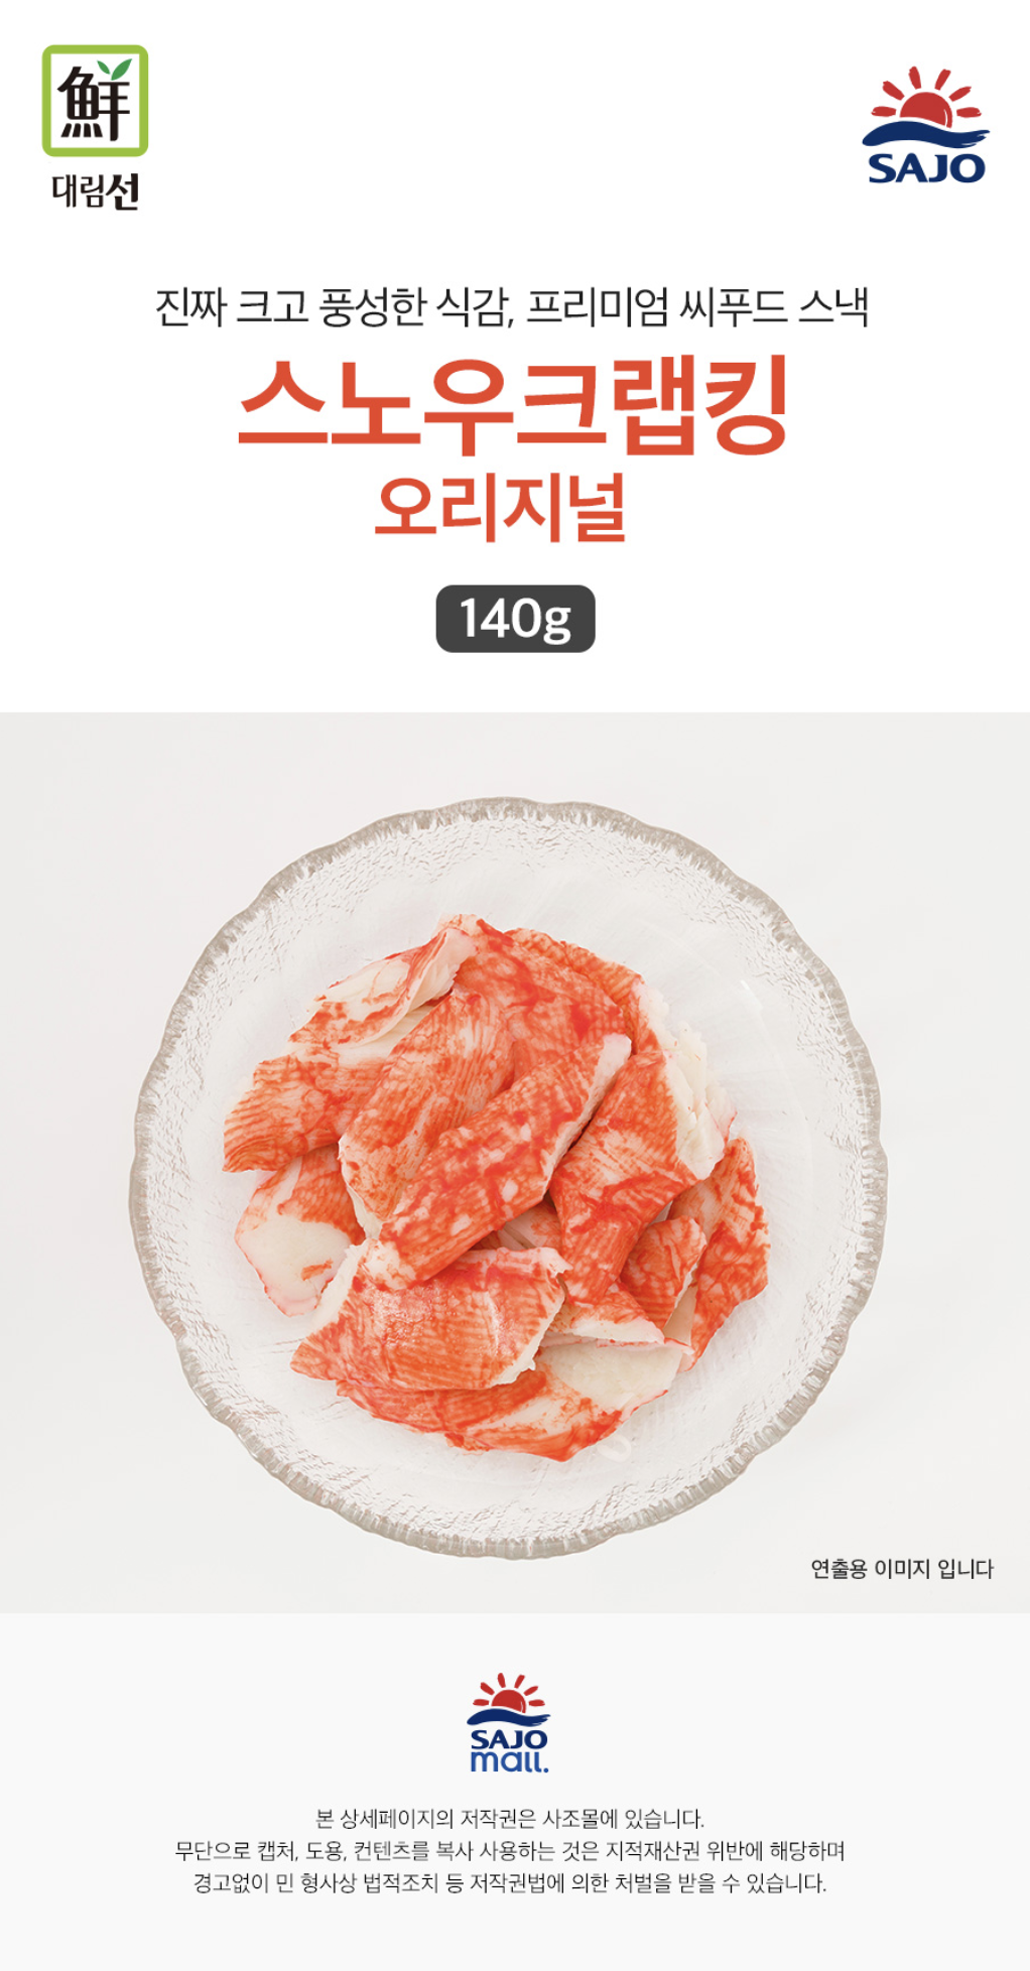 韓國食品-[Sajodaerim] Snow Crab King 140g